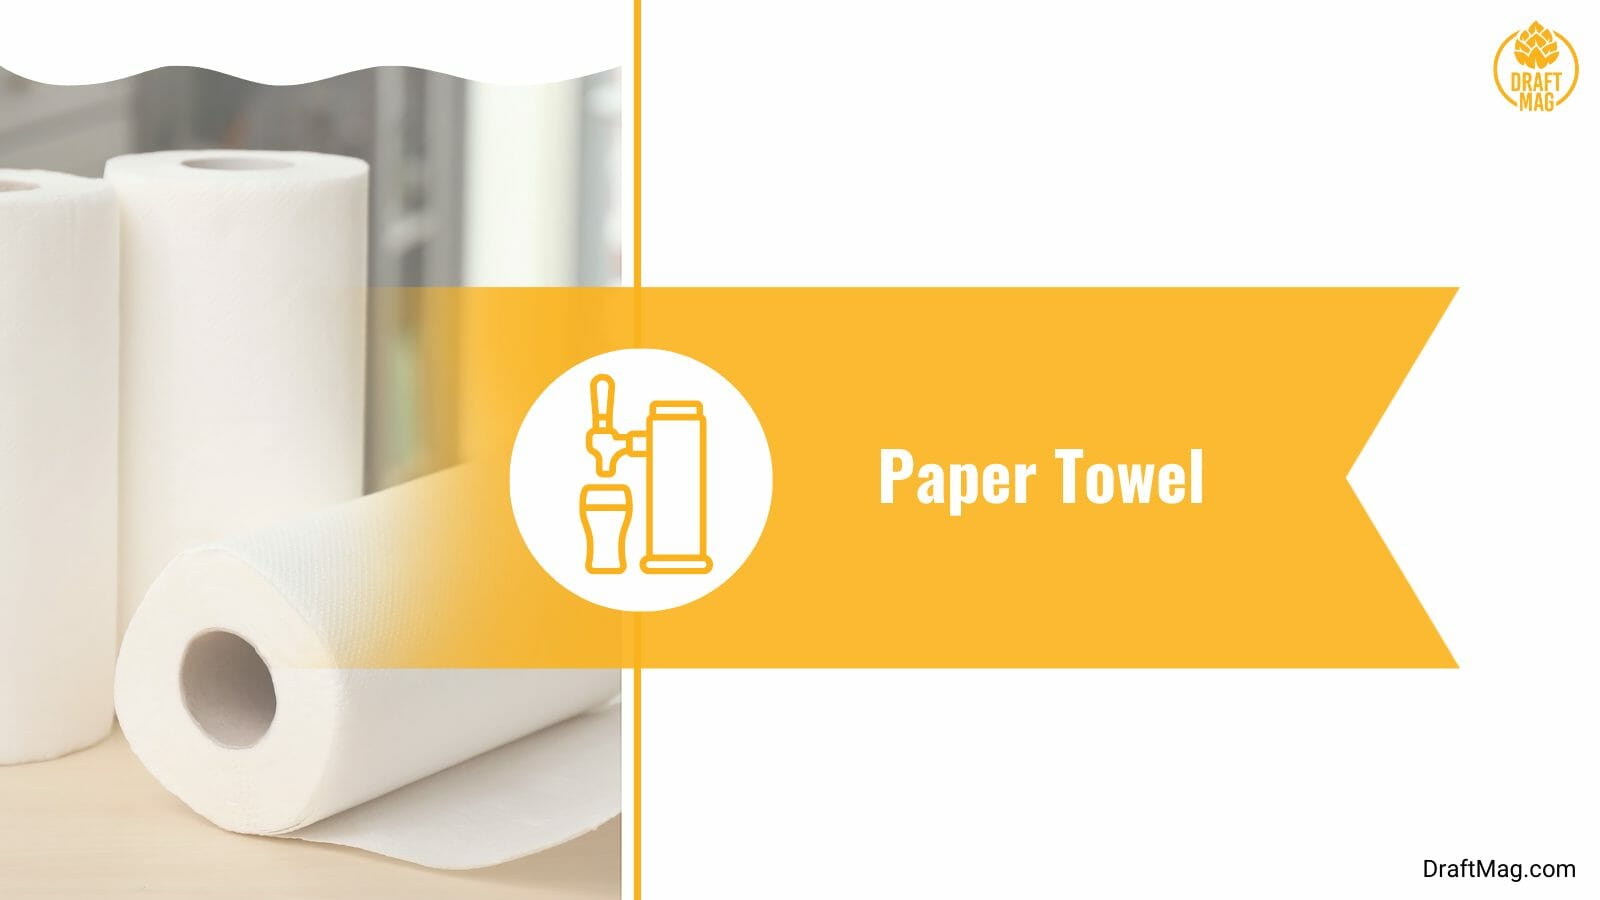 Using Paper Towel